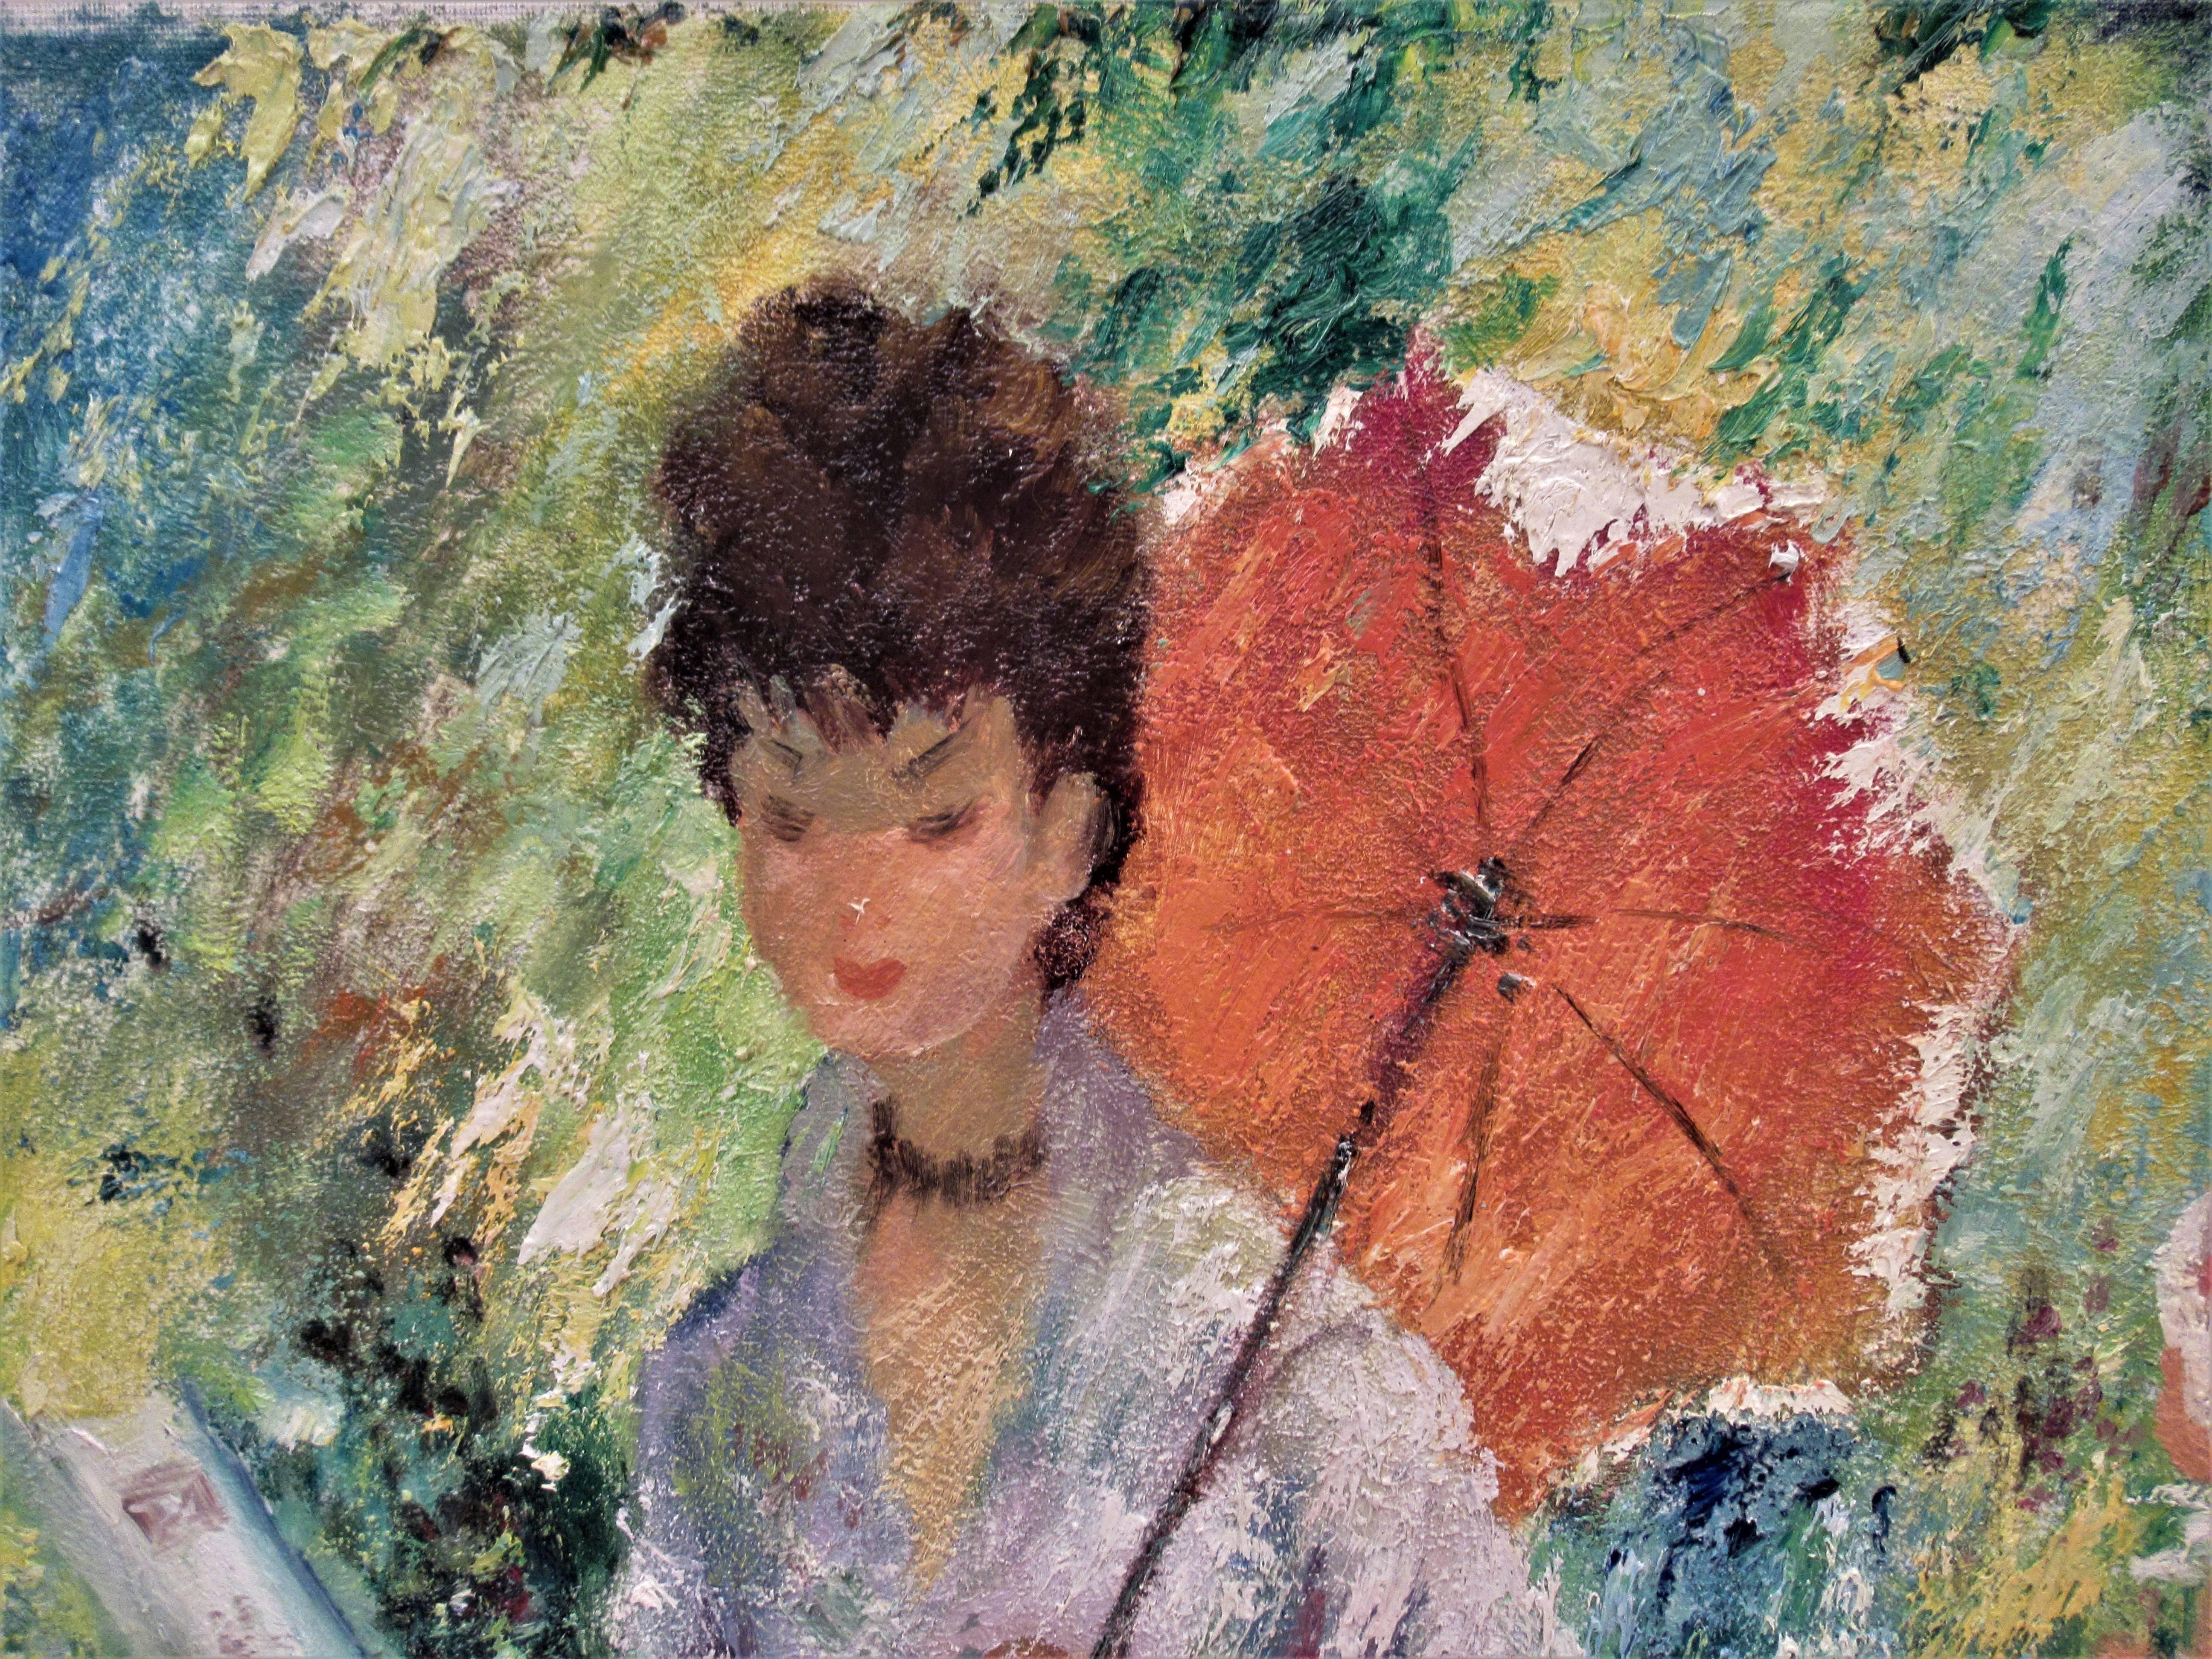 Femme avec Umbrella lisant un livre - Impressionnisme Painting par Marguerite Aers